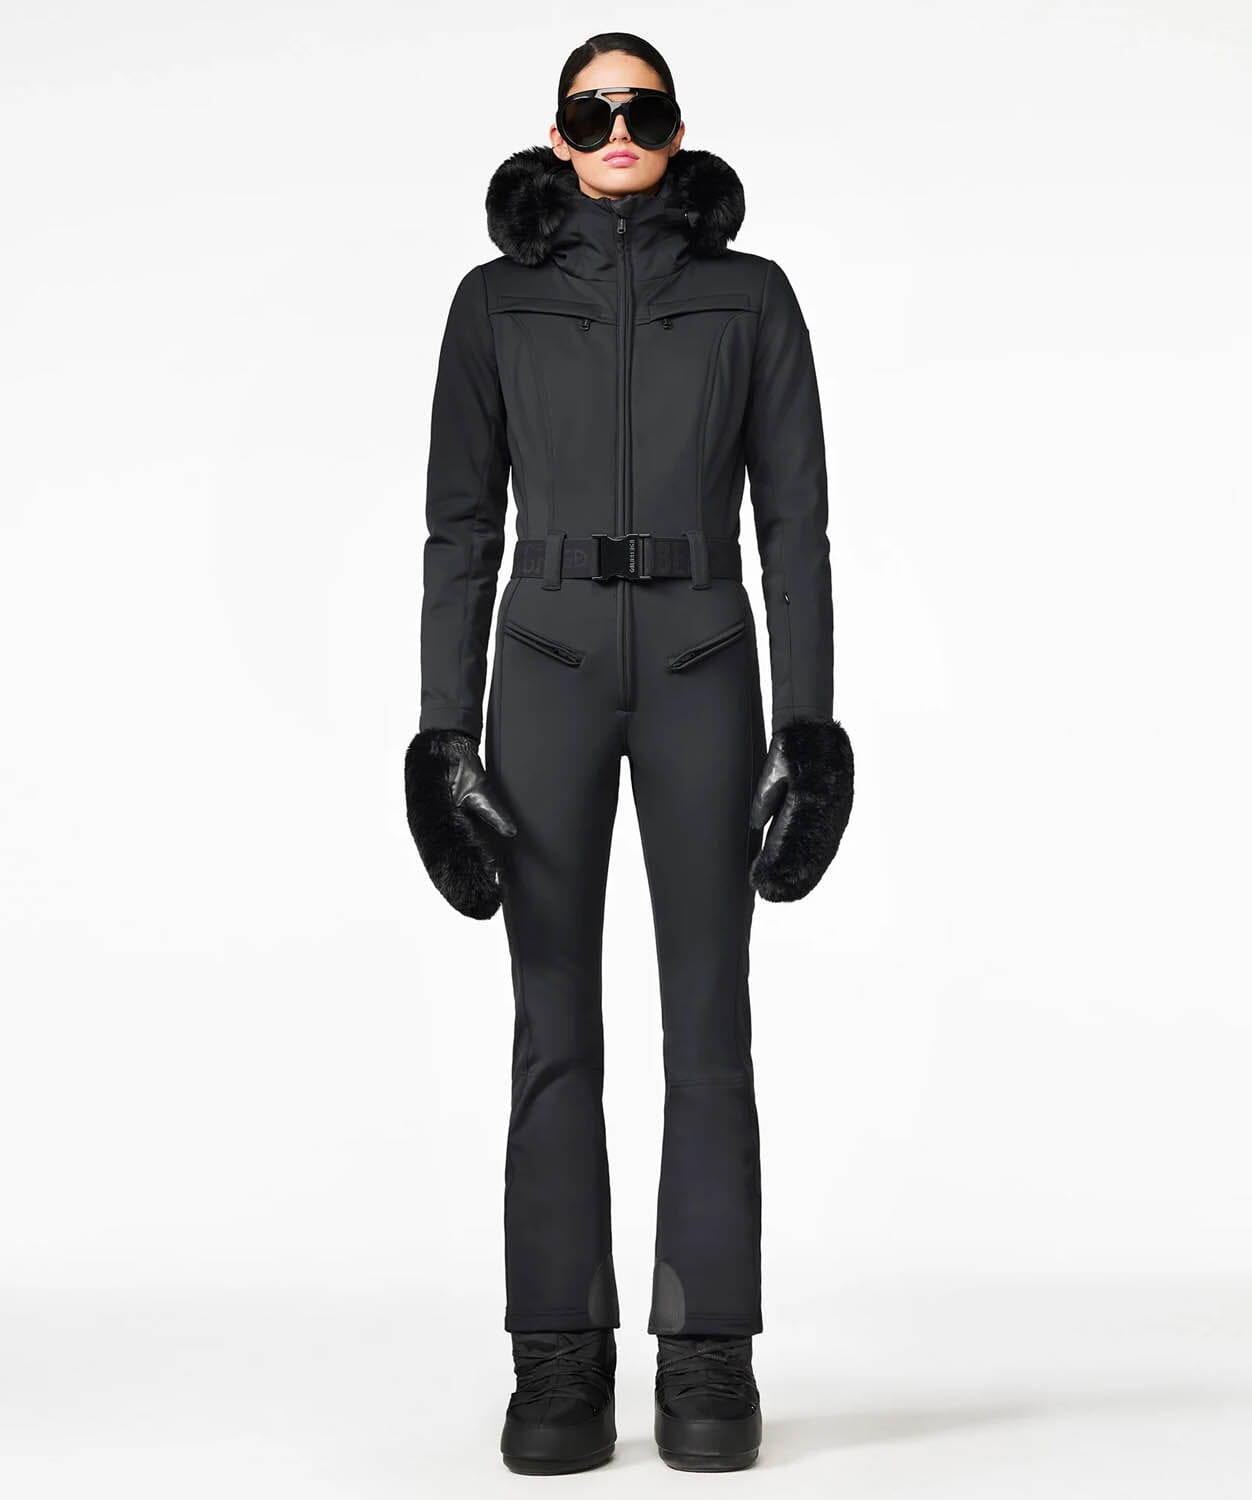 http://snowsport.com/cdn/shop/files/womens-parry-ski-suit-faux-border-one-piece-suits-goldbergh-black-36s-944806.jpg?v=1700558300